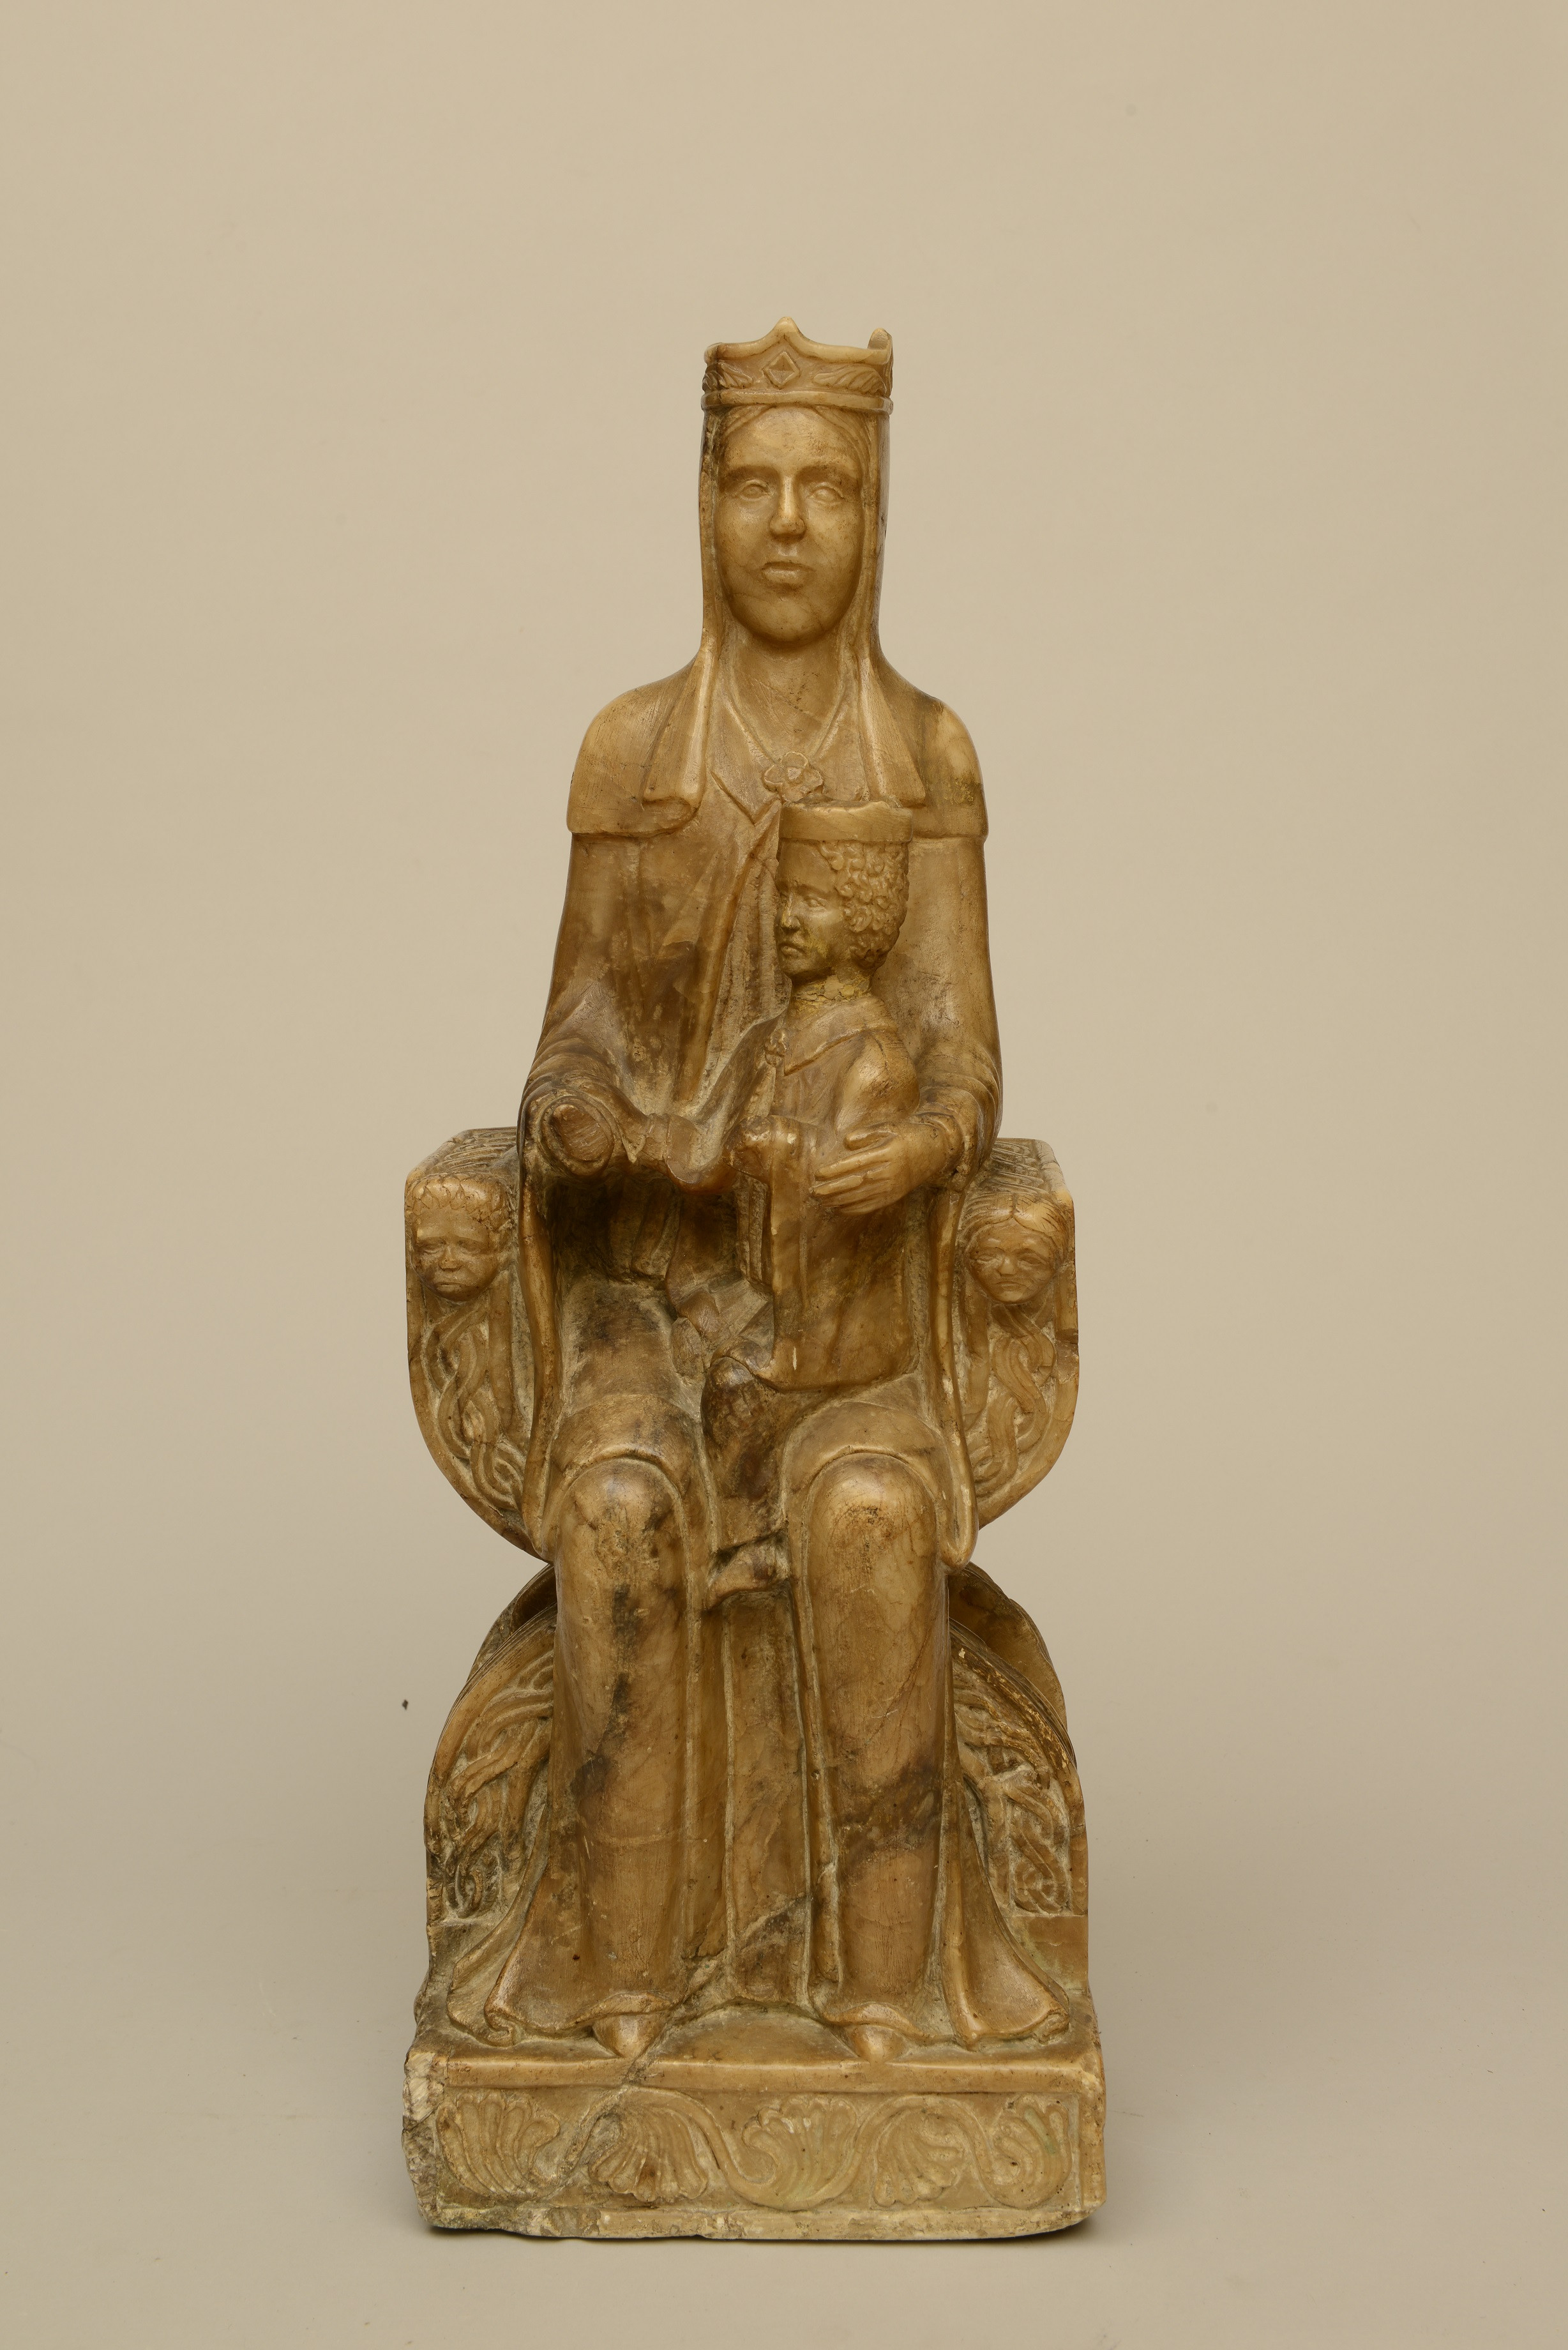 ESCUELA NORTE DE ITALIA, S XII, Virgen con el NIño 